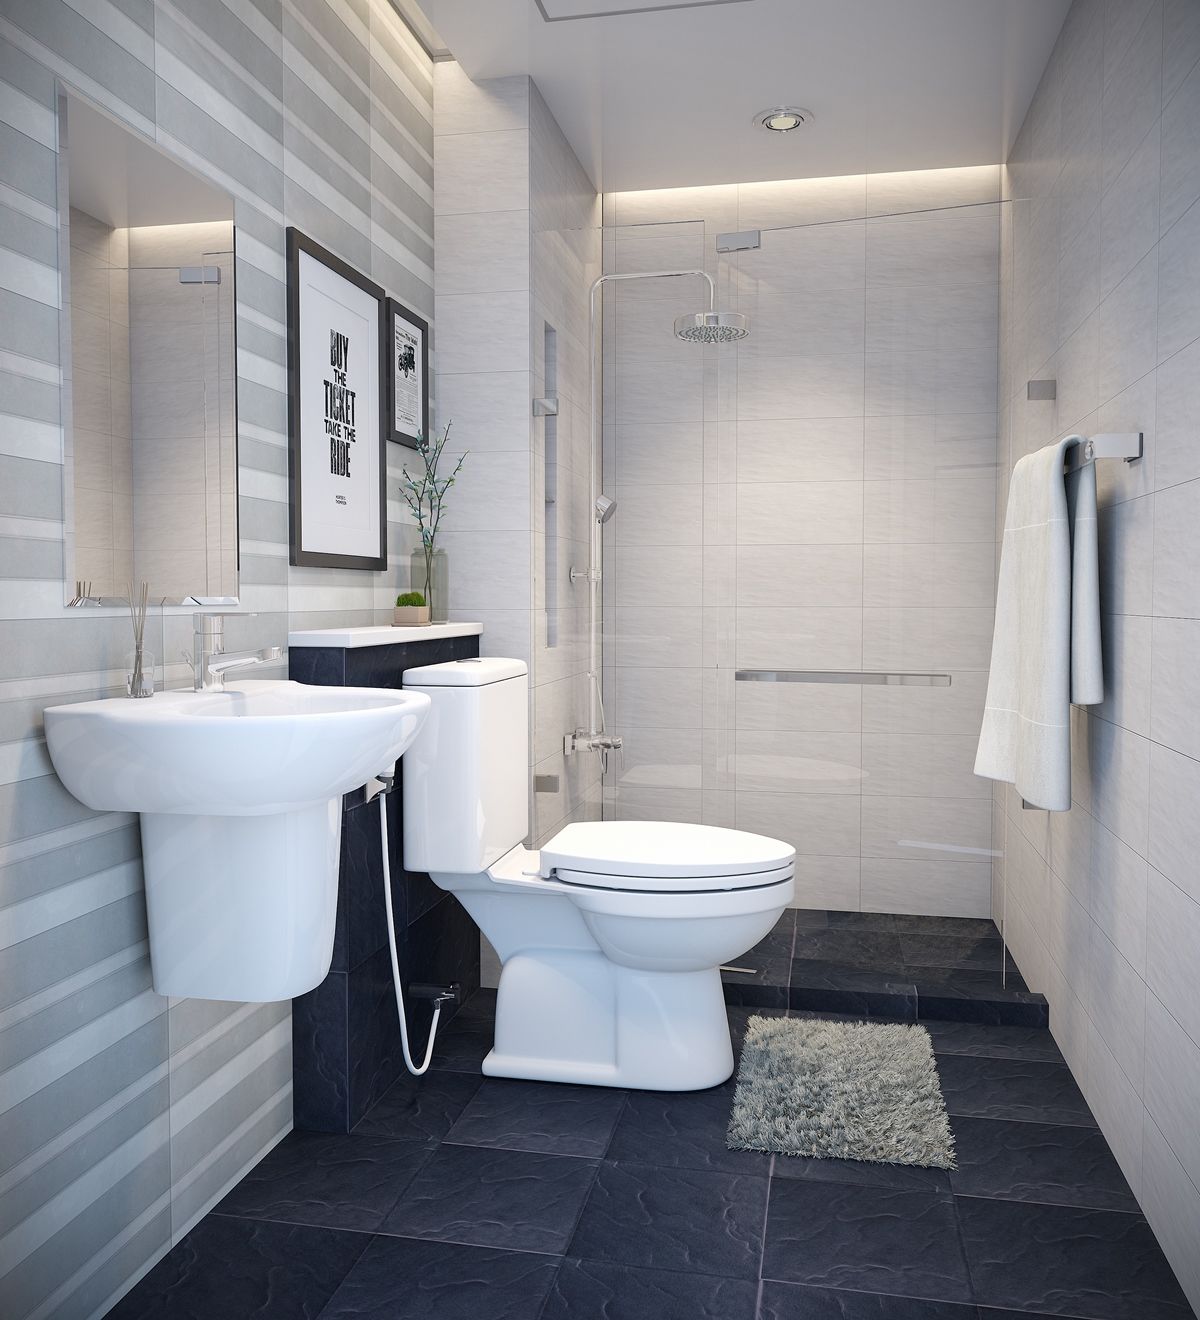 Thiết kế phòng vệ sinh nhỏ 3m2: Một phòng vệ sinh nhỏ có thể trở nên đẹp mắt và tiện nghi nếu có thiết kế chính xác và phù hợp. Chúng tôi sẽ tư vấn cho bạn các bước thiết kế chi tiết, từ lựa chọn màu sắc, các vật liệu, đến thiết bị và phụ kiện để giúp phòng vệ sinh trở nên đẹp hơn và tiện dụng hơn.